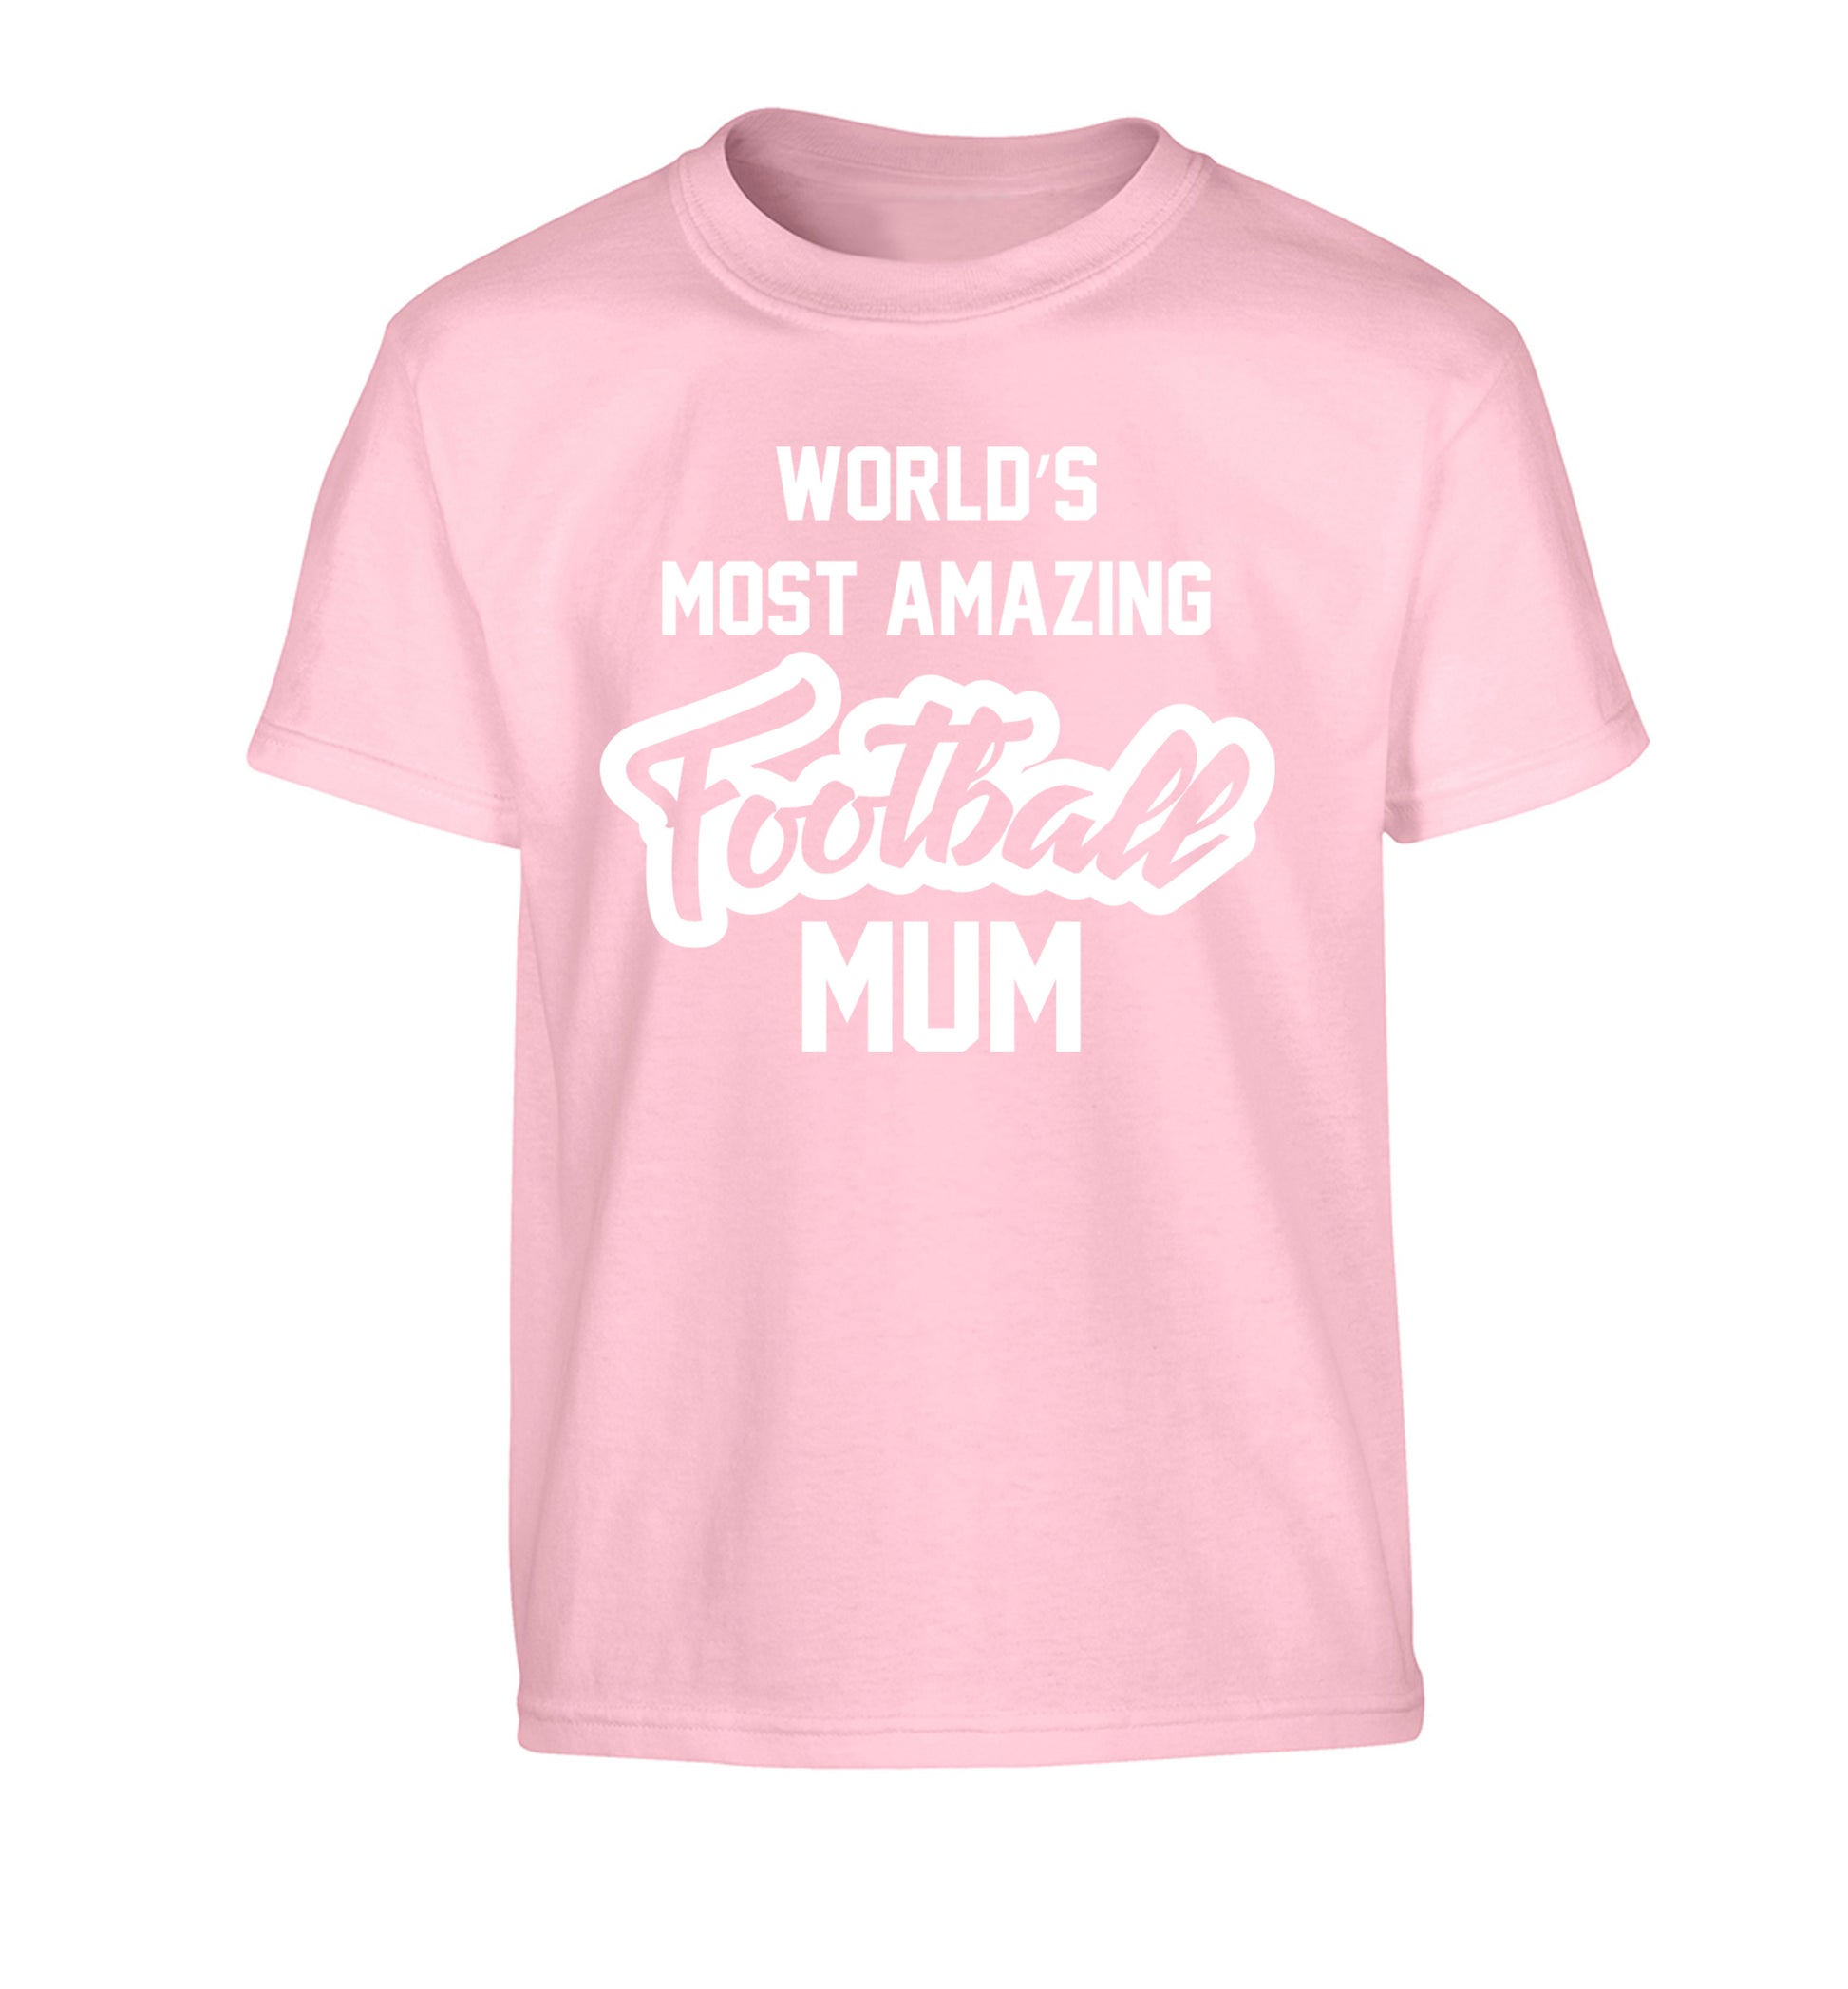 Worlds most amazing football mum Children's light pink Tshirt 12-14 Years